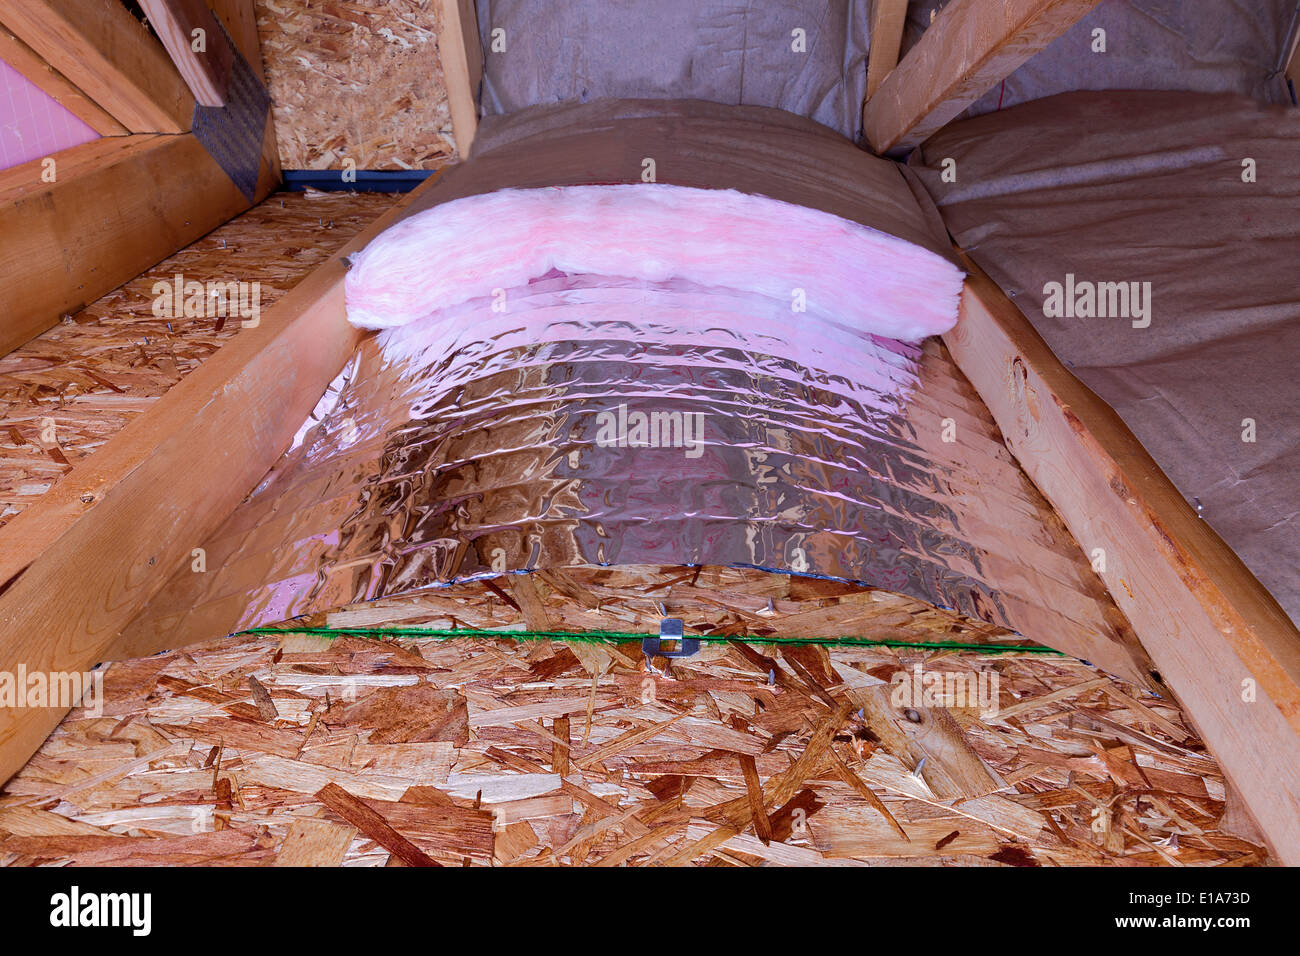 Isolierung des Dachbodens mit Fiberglas kalt Barriere und reflektierende Hitze Barriere als Trennwand zwischen den Dachboden Balken, Arbeit Stockfoto